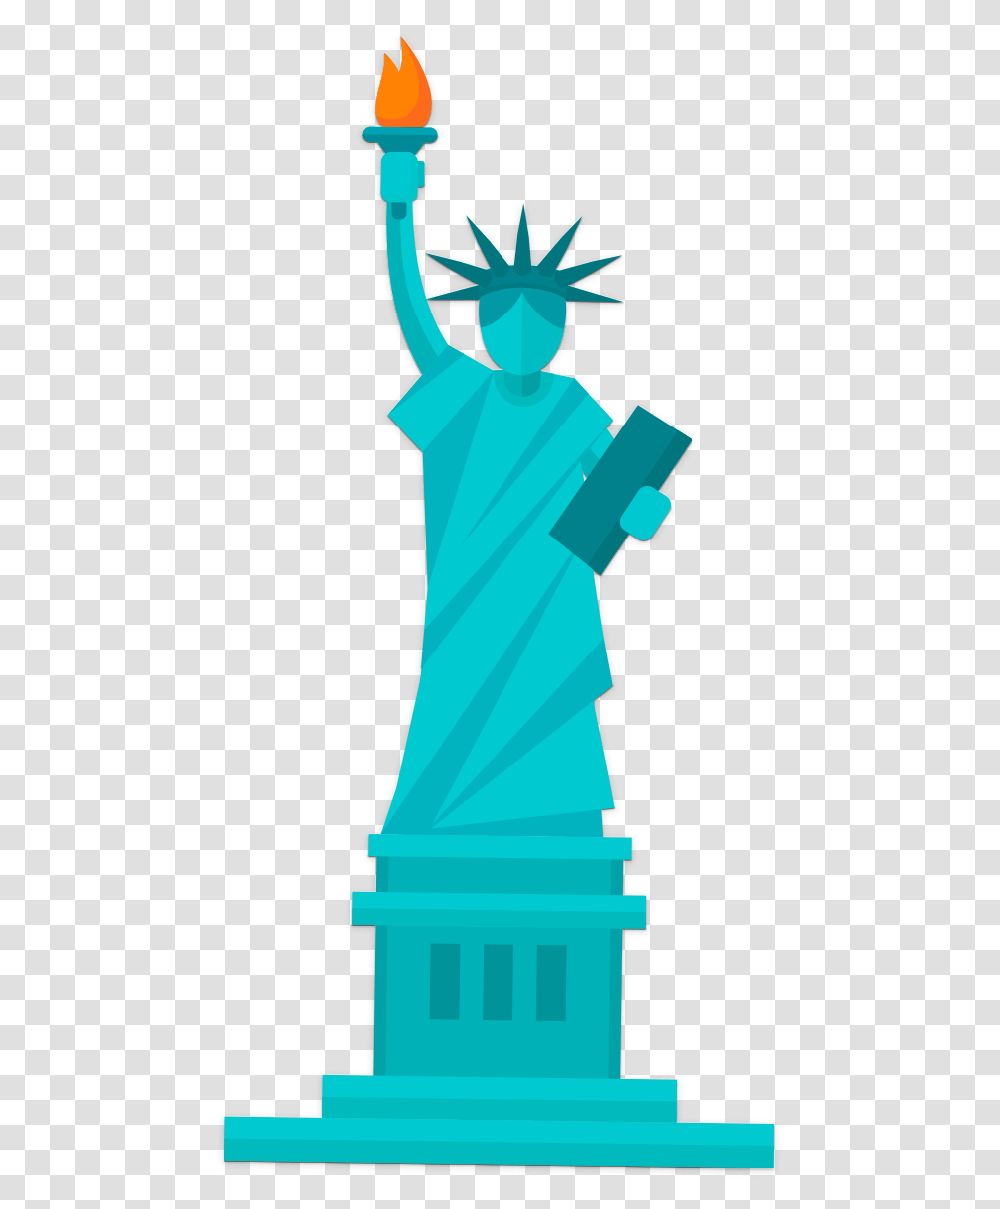 La Estatua De La Libertad Animada Clipart Download Illustration, Telescope, Hand, Bottle, Drawing Transparent Png